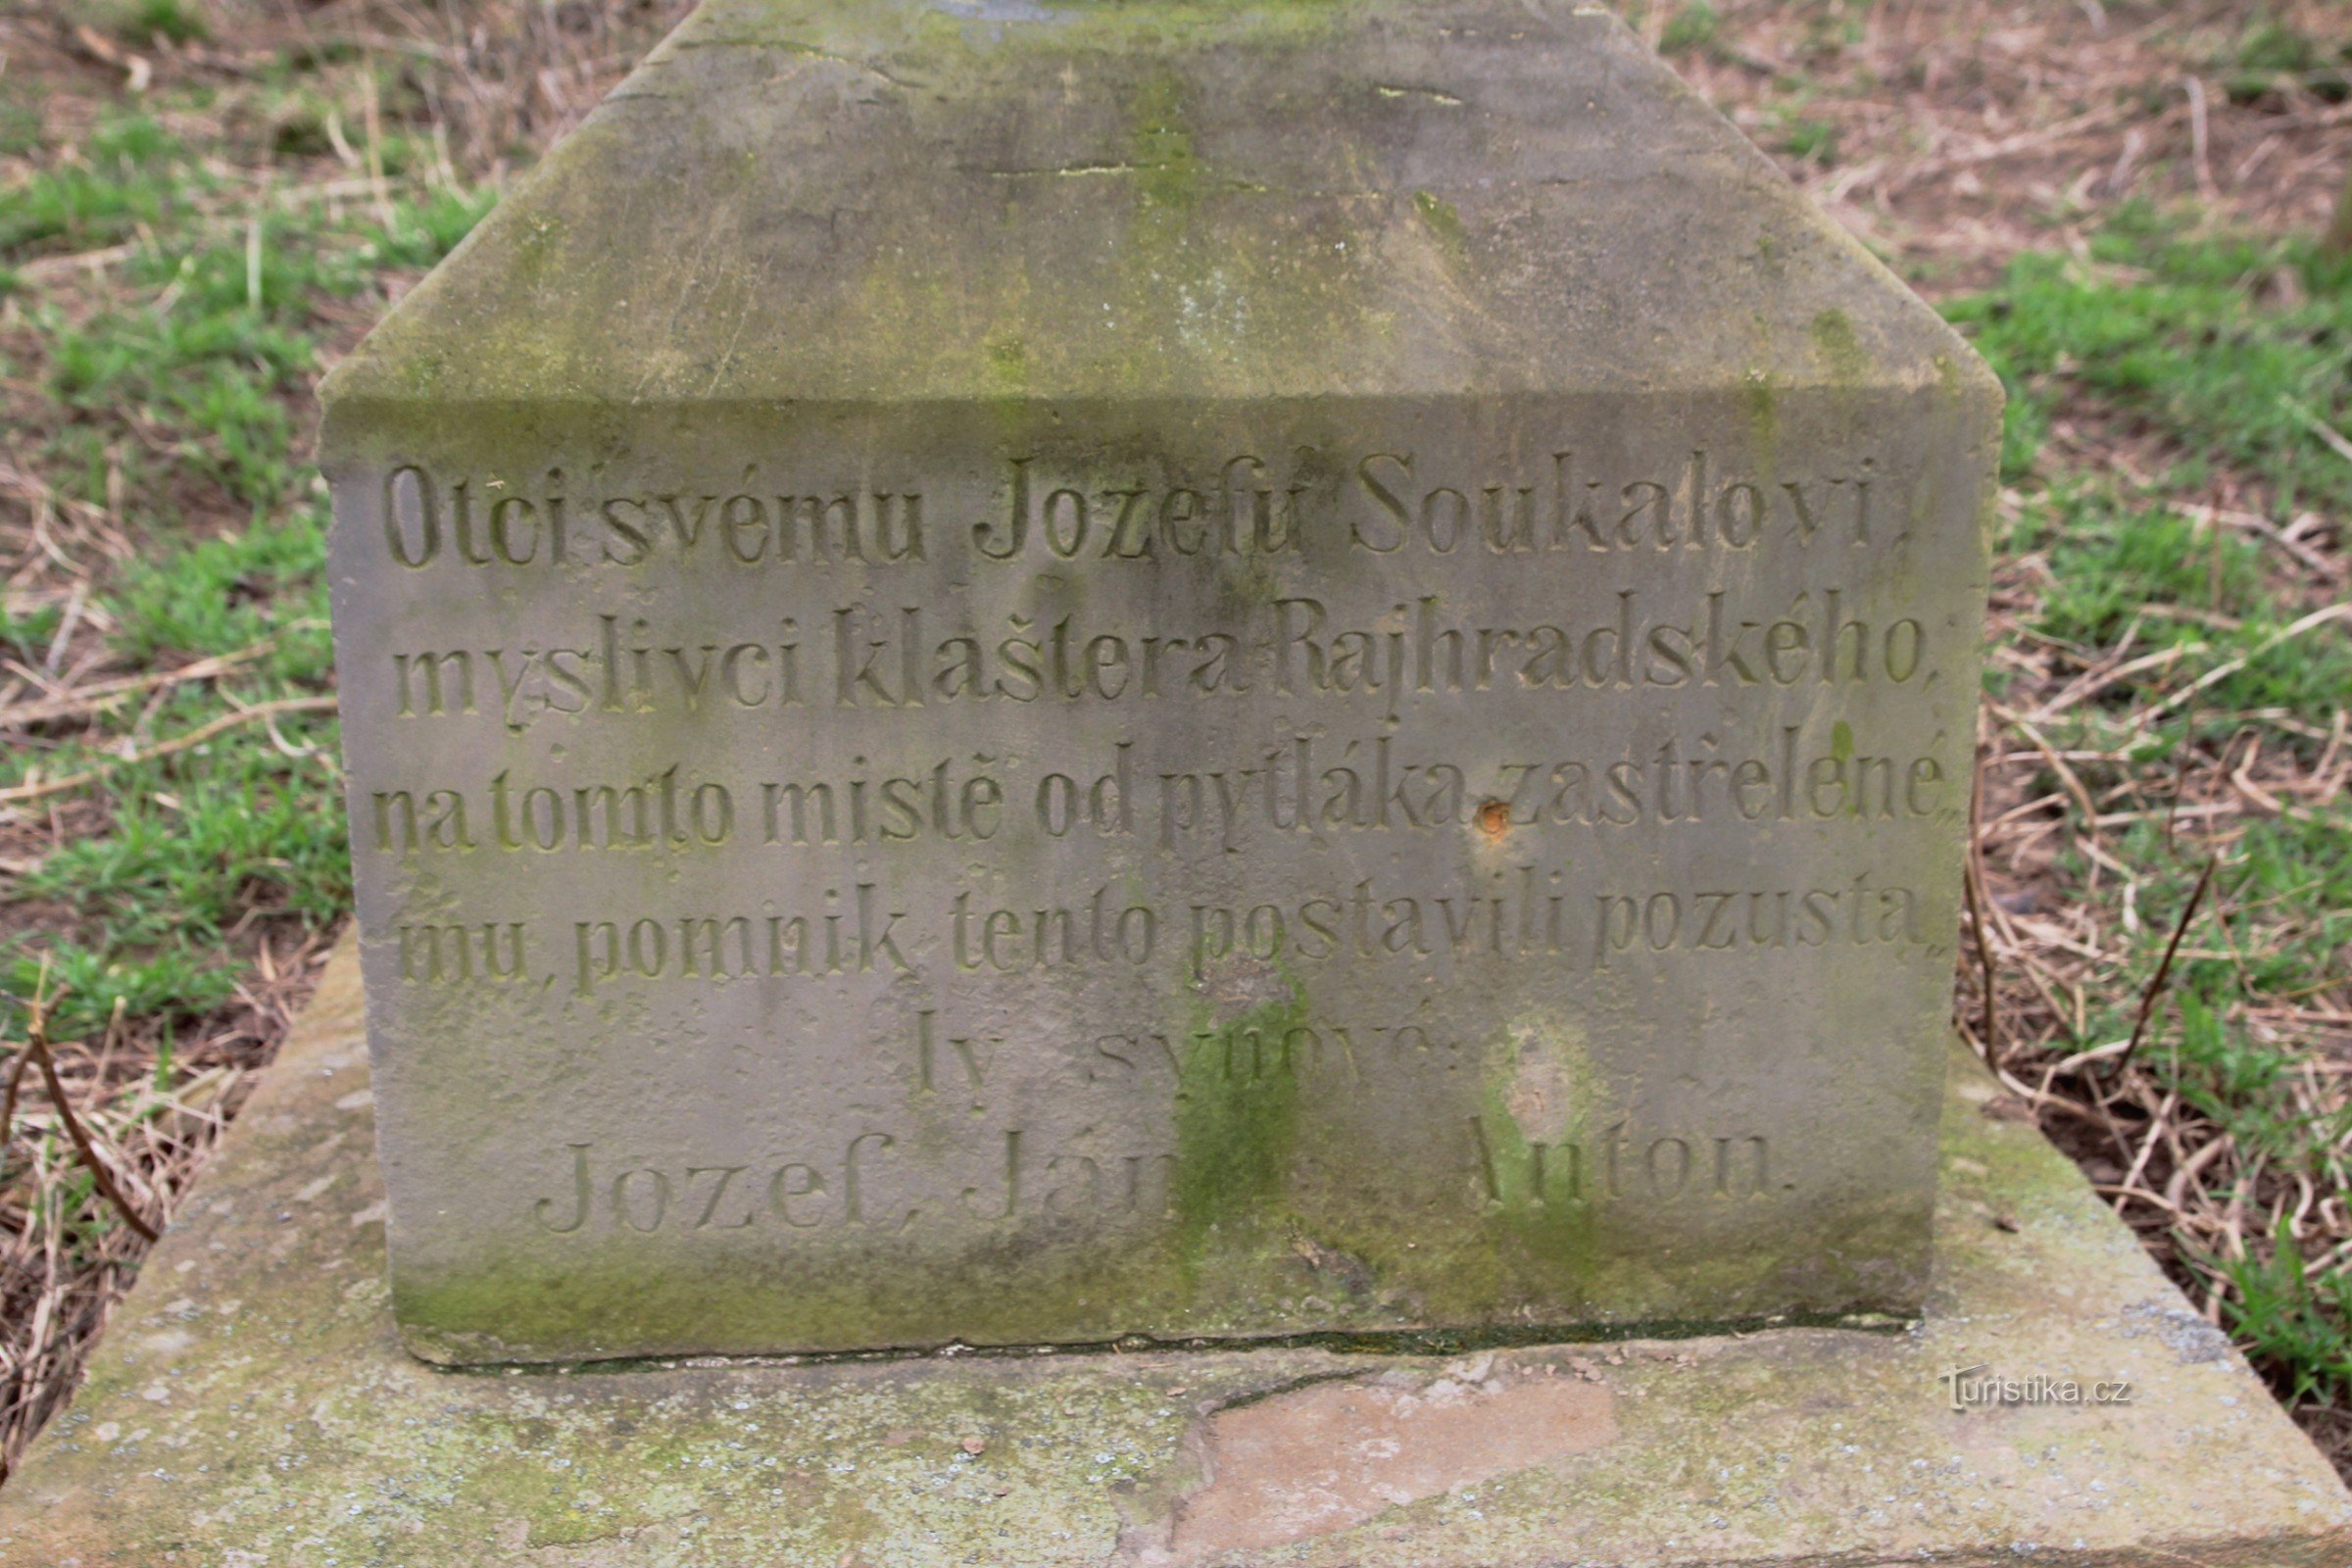 Detalje af inskriptionen på monumentet